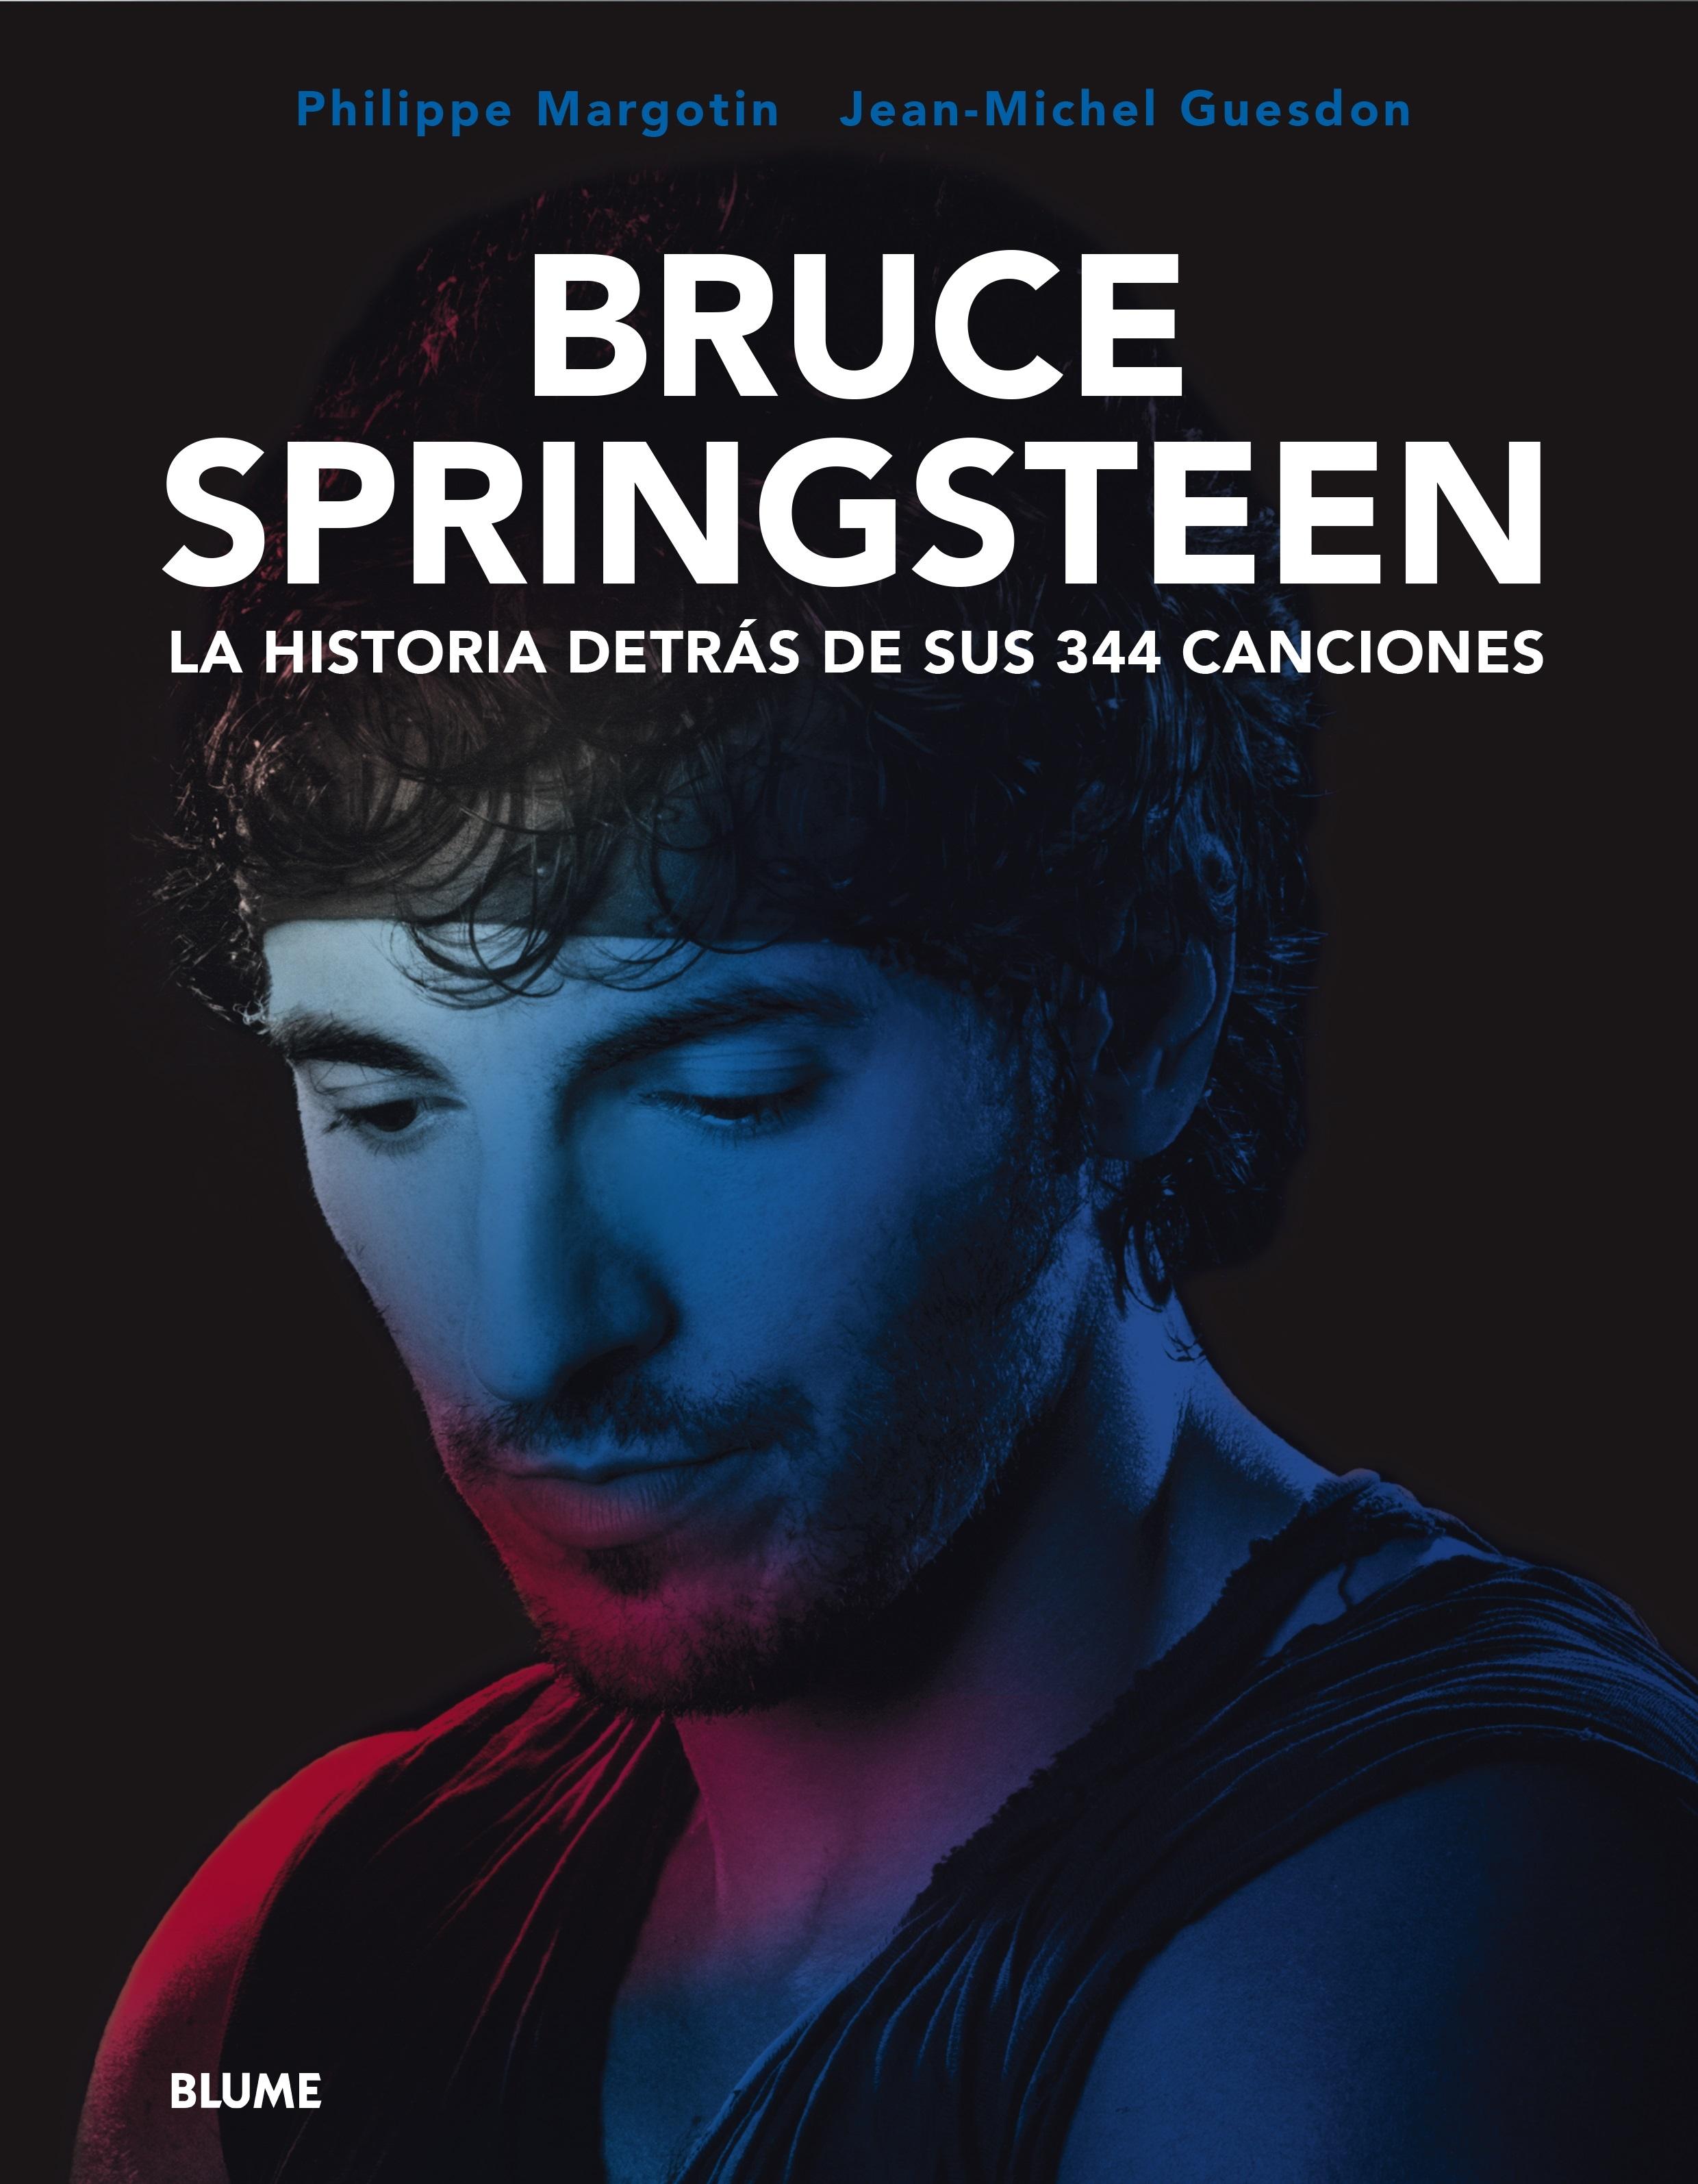 Bruce Springsteen "La Historia Detrás de sus 344 Canciones"